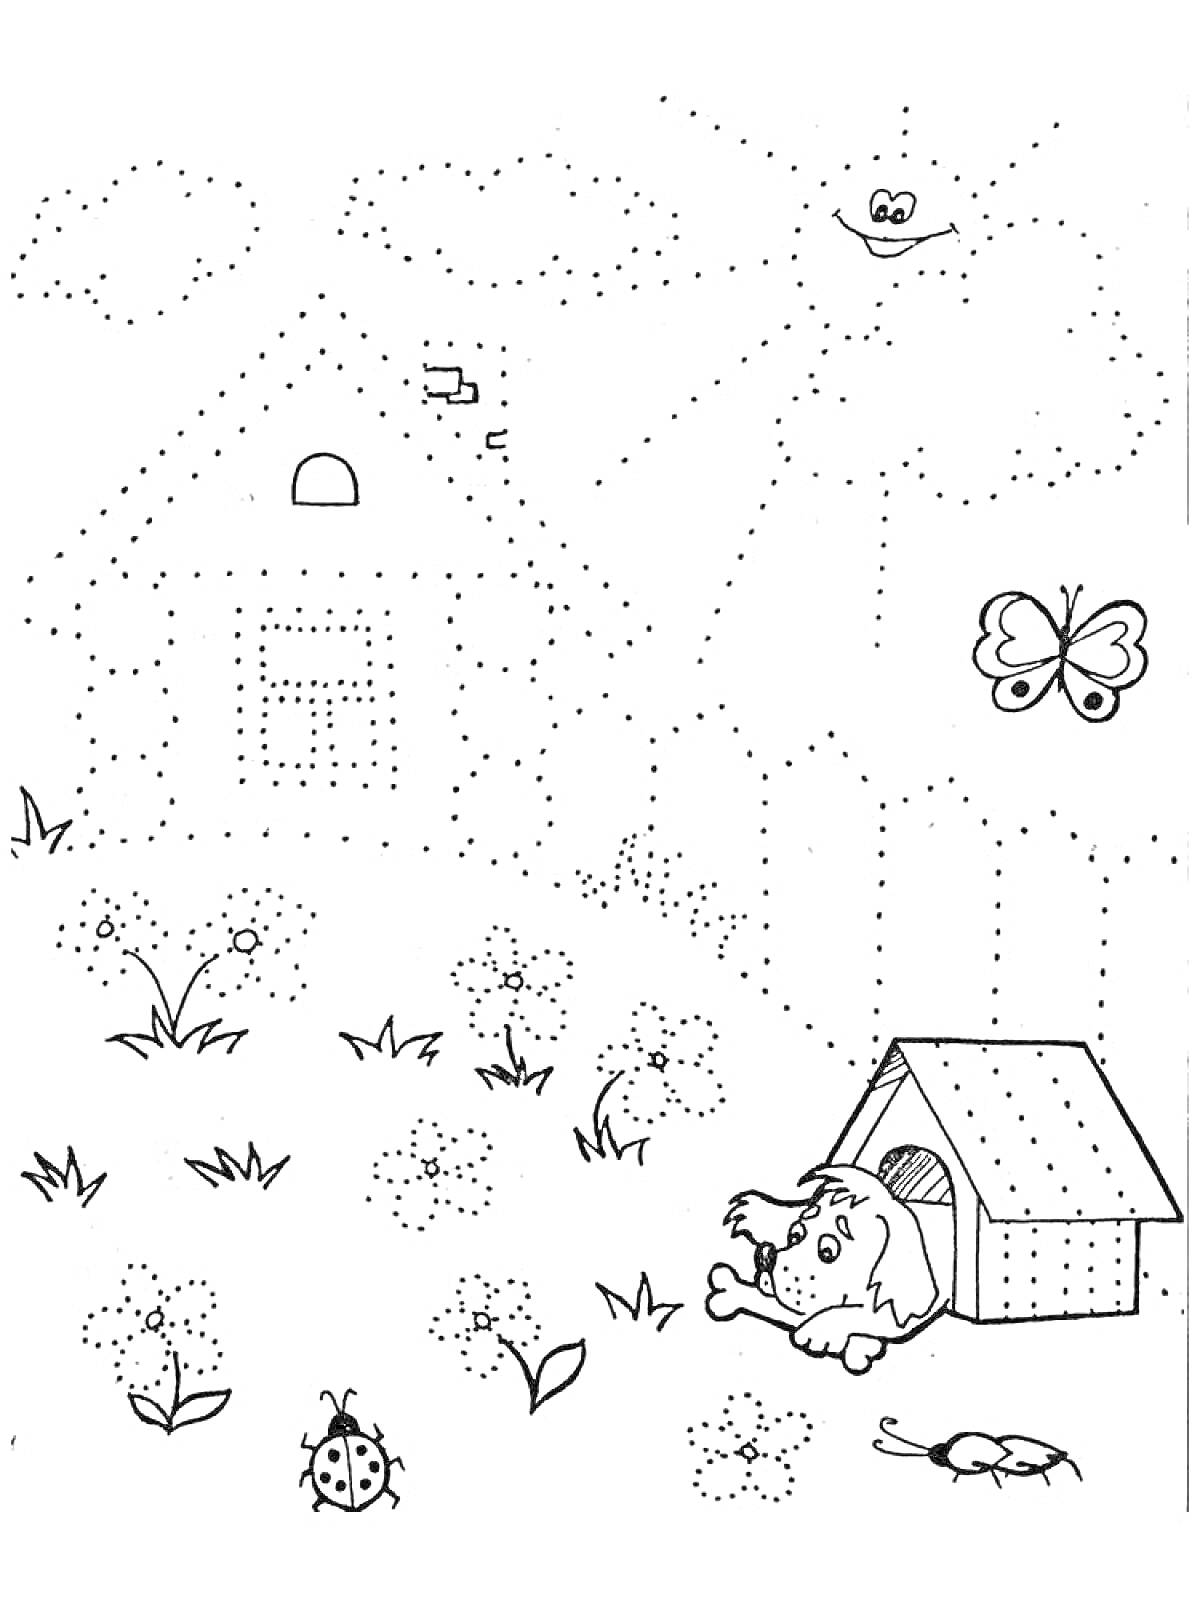 Раскраска Пейзаж с домом, собакой, бабочкой, божьей коровкой, цветами и травой по точкам